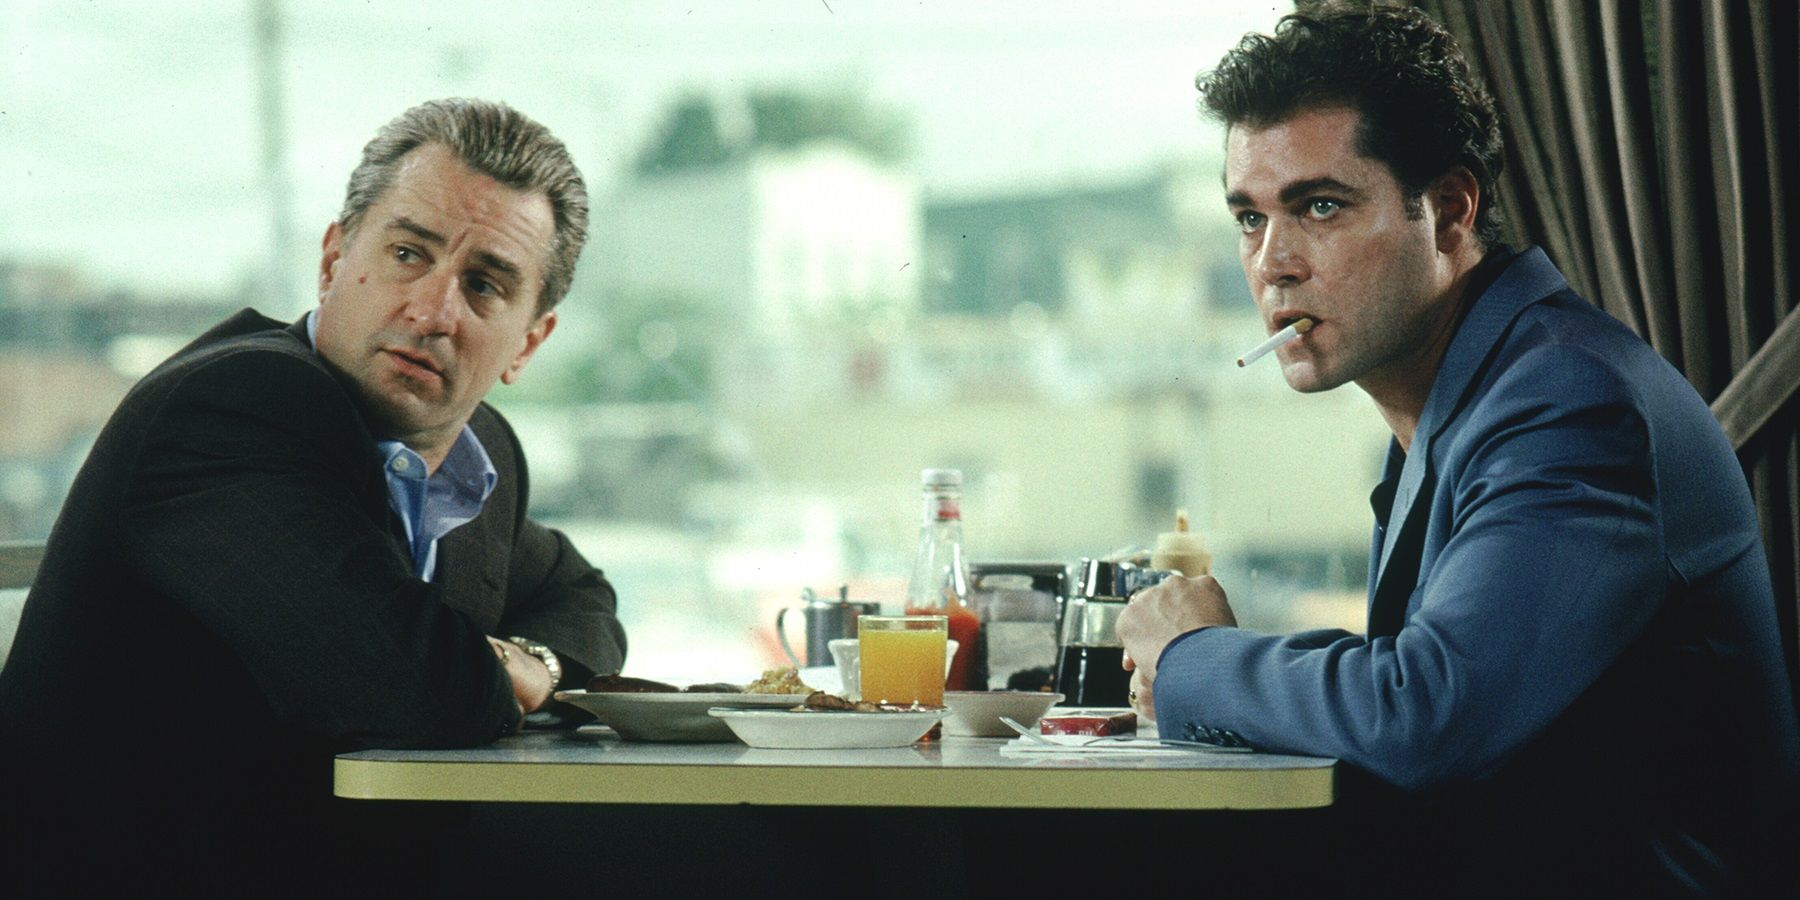 Ray Liotta and Robert De Niro in Goodfellas